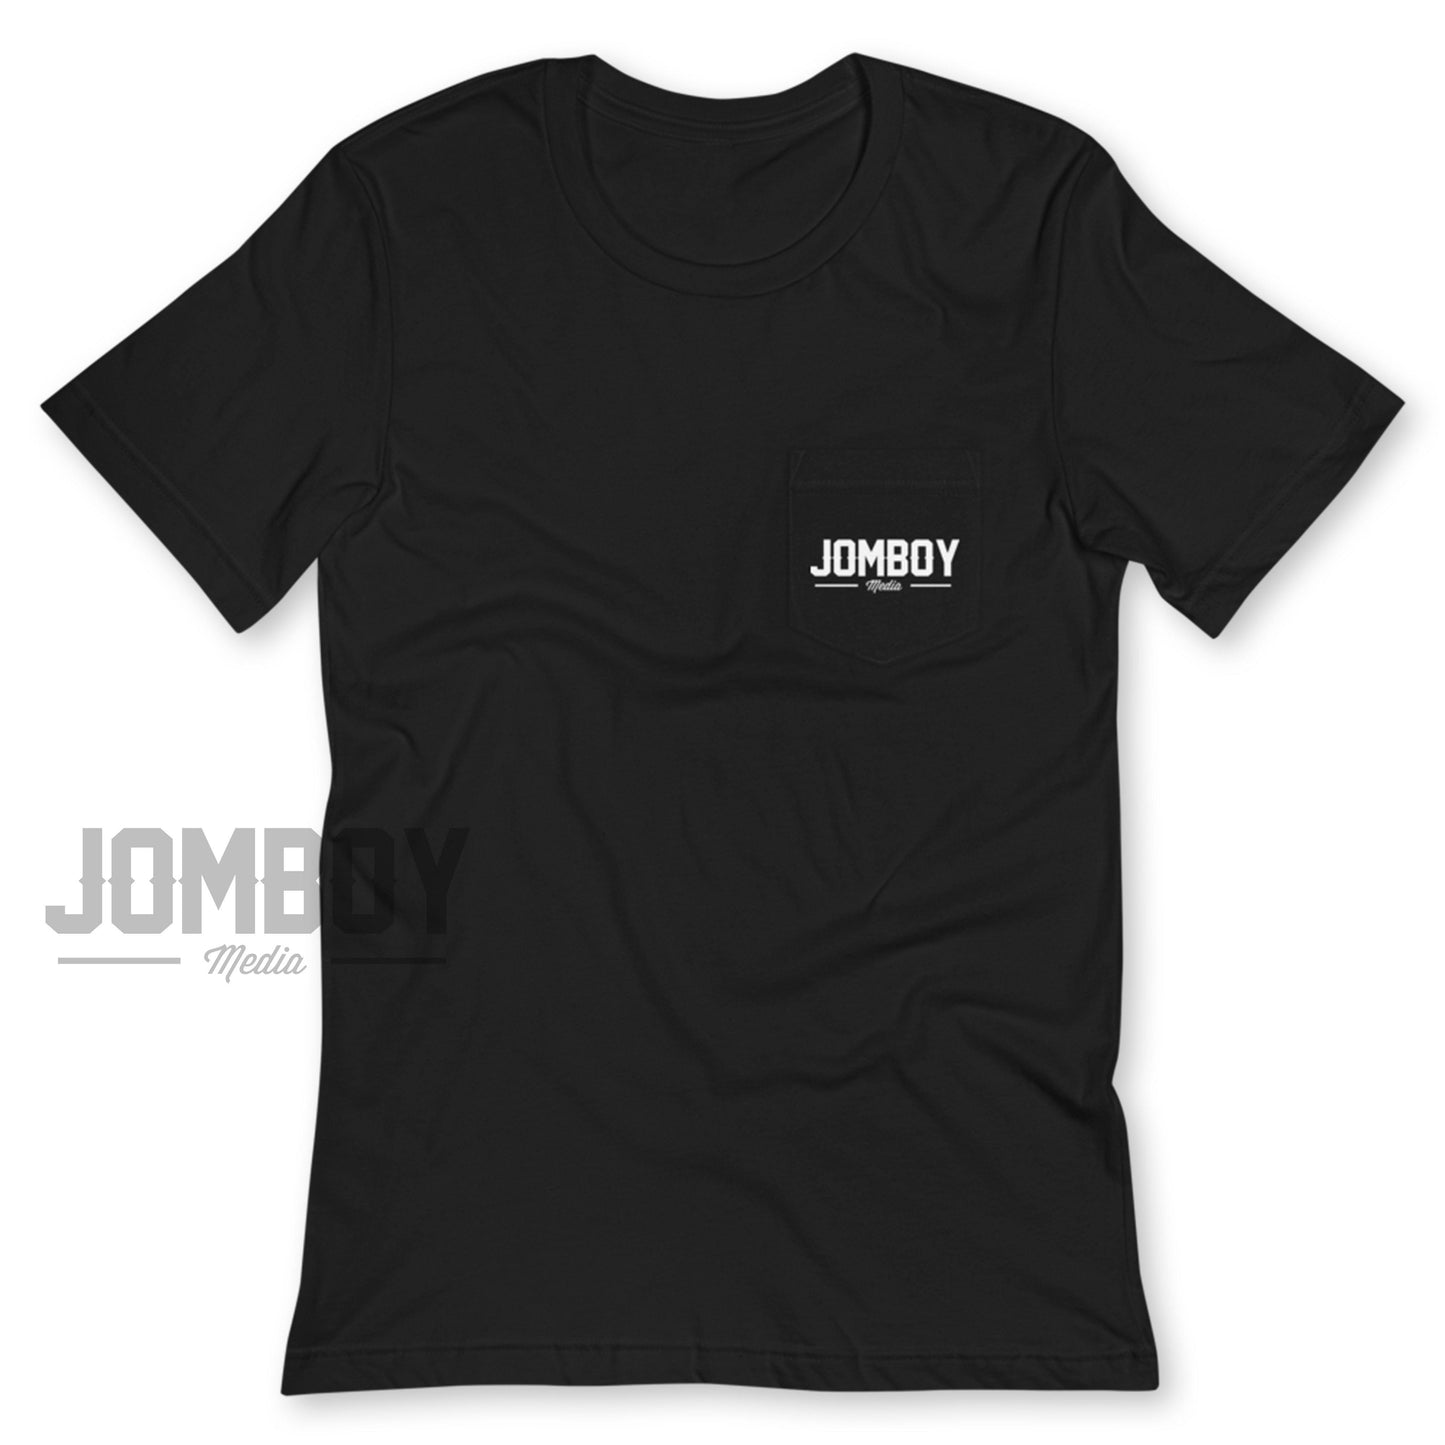 Jomboy Media | Pocket T-Shirt - Jomboy Media